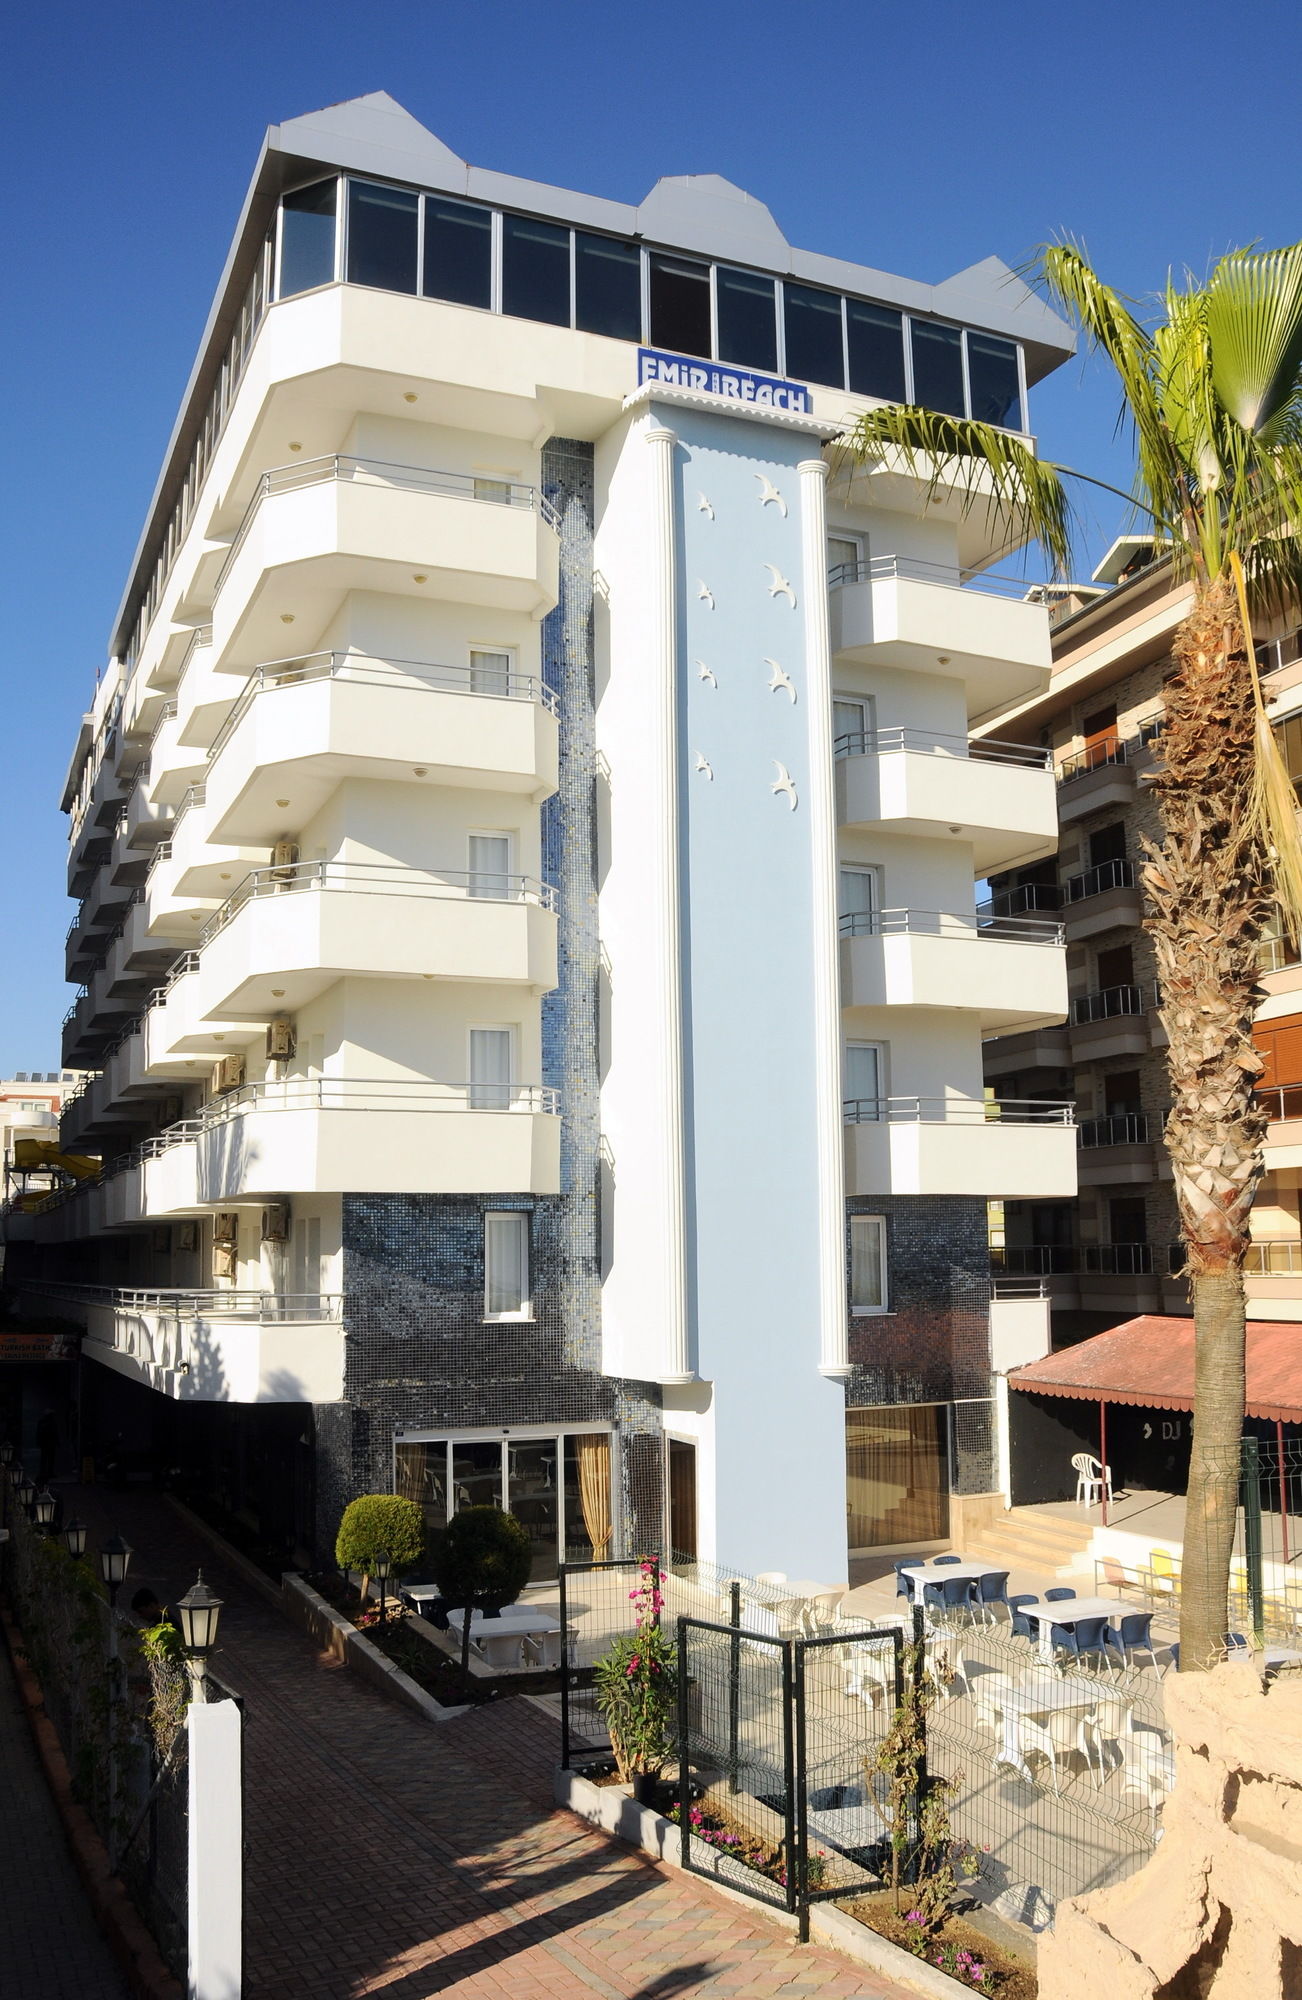 Emir Fosse Beach Hotel - All Inclusive